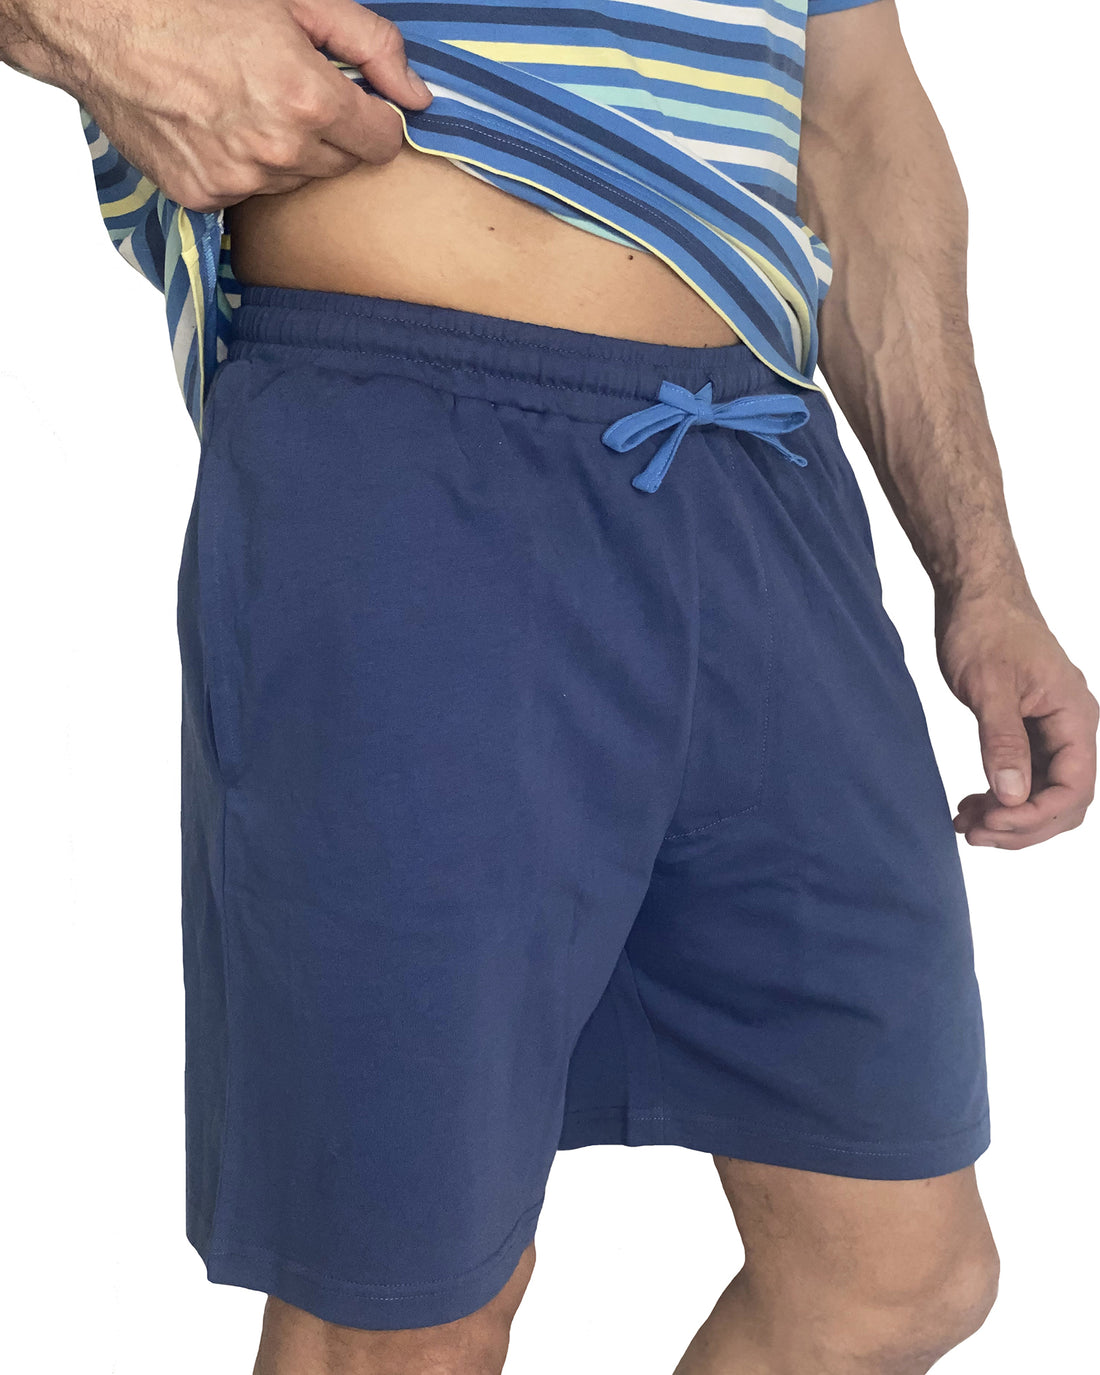 Korte pyjama met veelkleurige blauwe strepen van katoenjersey